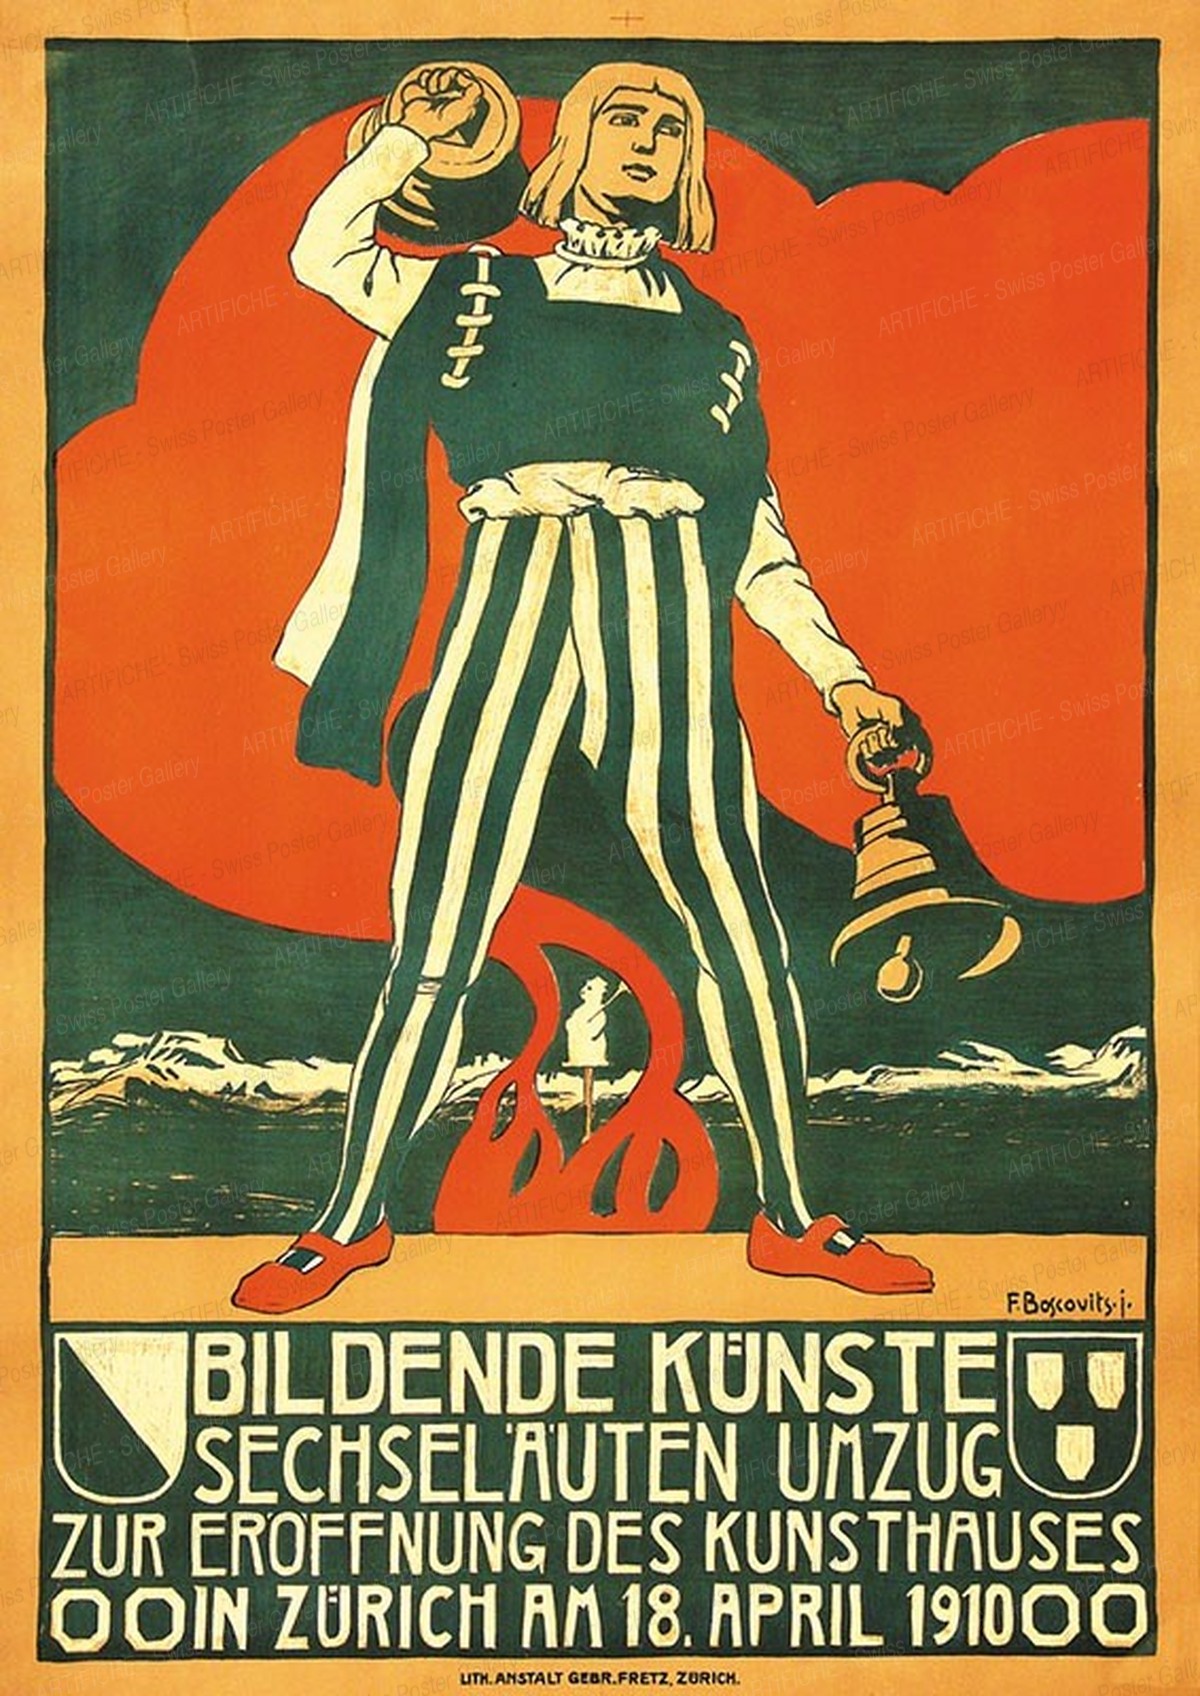 Sechseläuten-Umzug – Bildende Künste – Zur Eröffnung des Kunsthauses 1910, Fritz jun. Boscovits